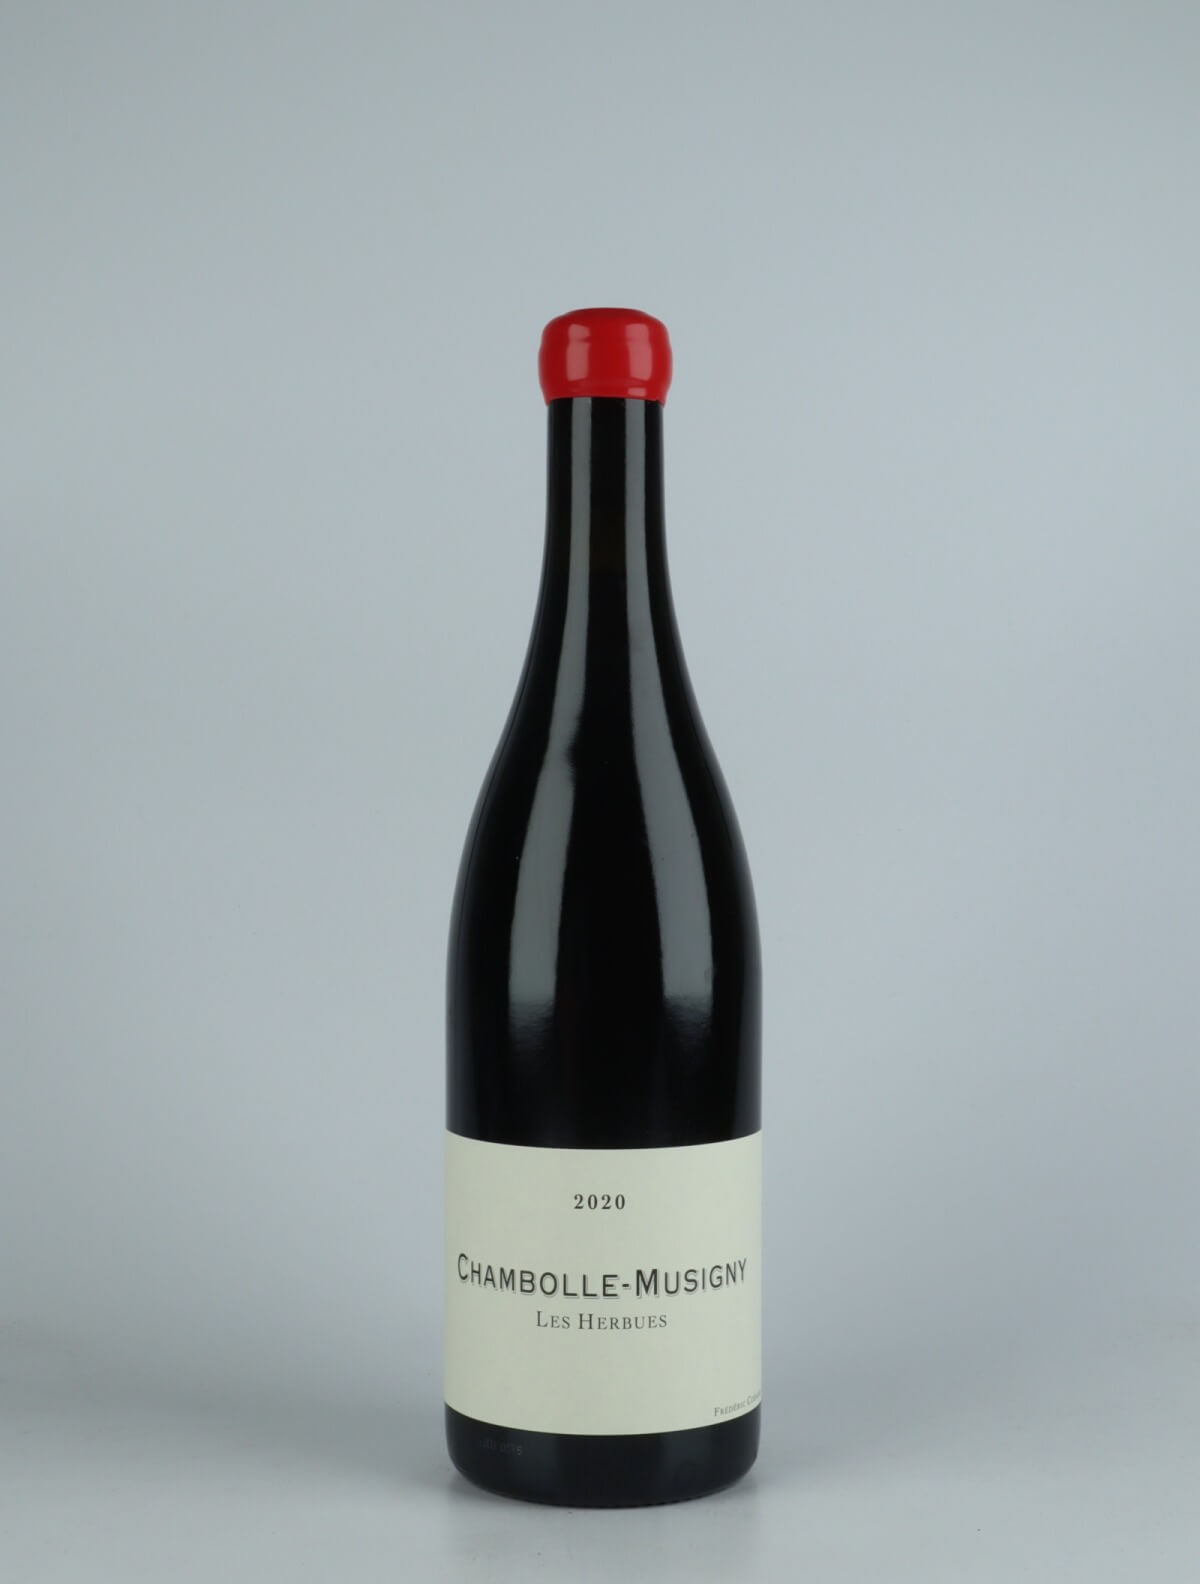 En flaske 2020 Chambolle Musigny - Les Herbues Rødvin fra Frédéric Cossard, Bourgogne i Frankrig